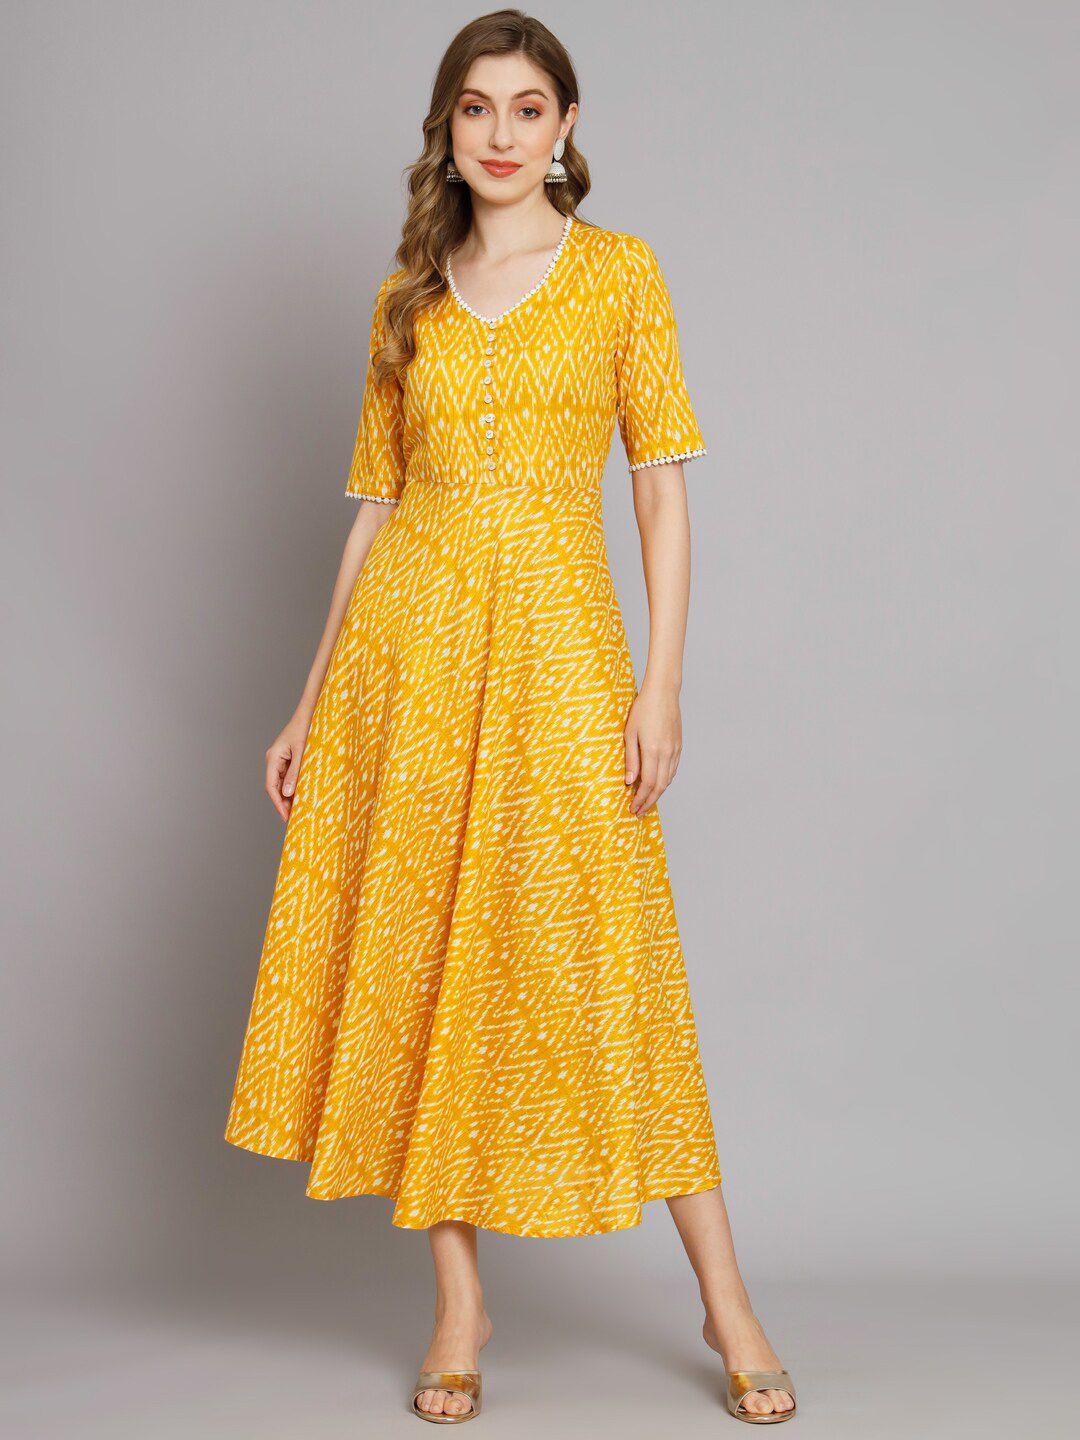 deckedup-floral-print-cotton-maxi-ethnic-dresses